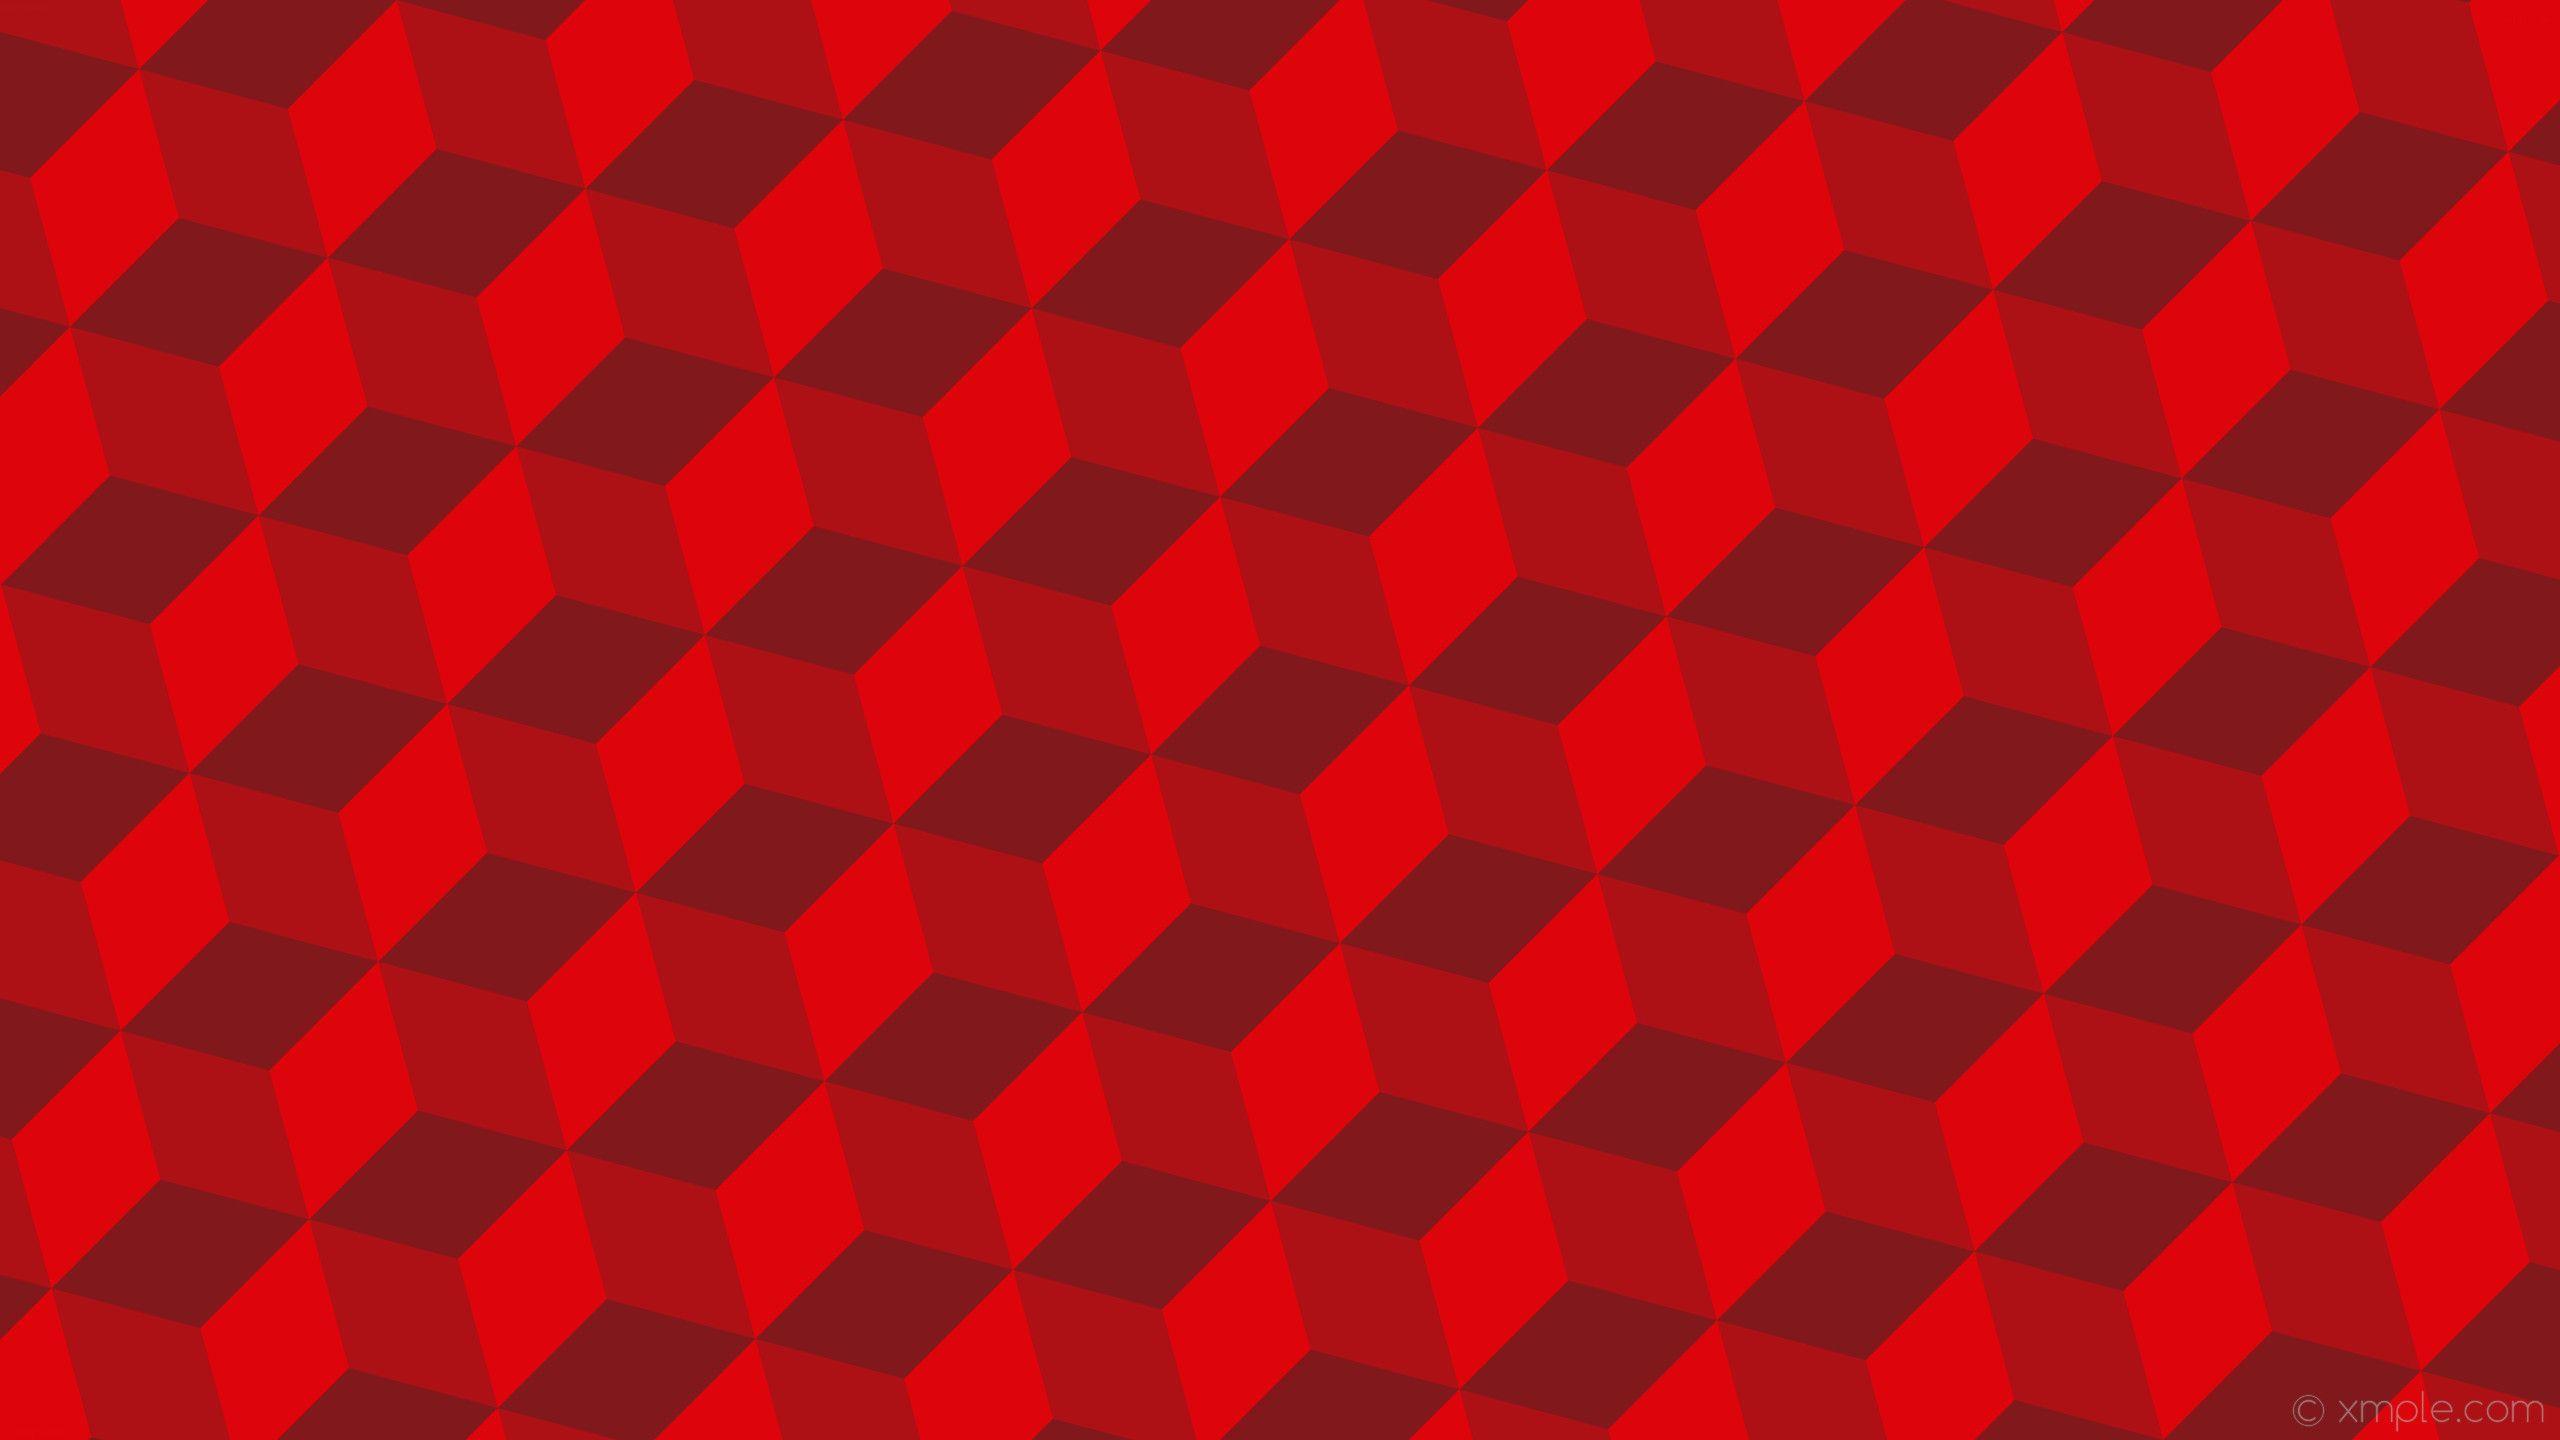 Hình nền 3D đỏ: Tận hưởng màu sắc rực rỡ và sự sôi động của hình nền 3D đỏ. Hình nền này sẽ khiến bạn thấy như đang đi vào một thế giới đầy màu sắc và động lực. Hãy khám phá và cảm nhận từng chi tiết trên hình nền này.